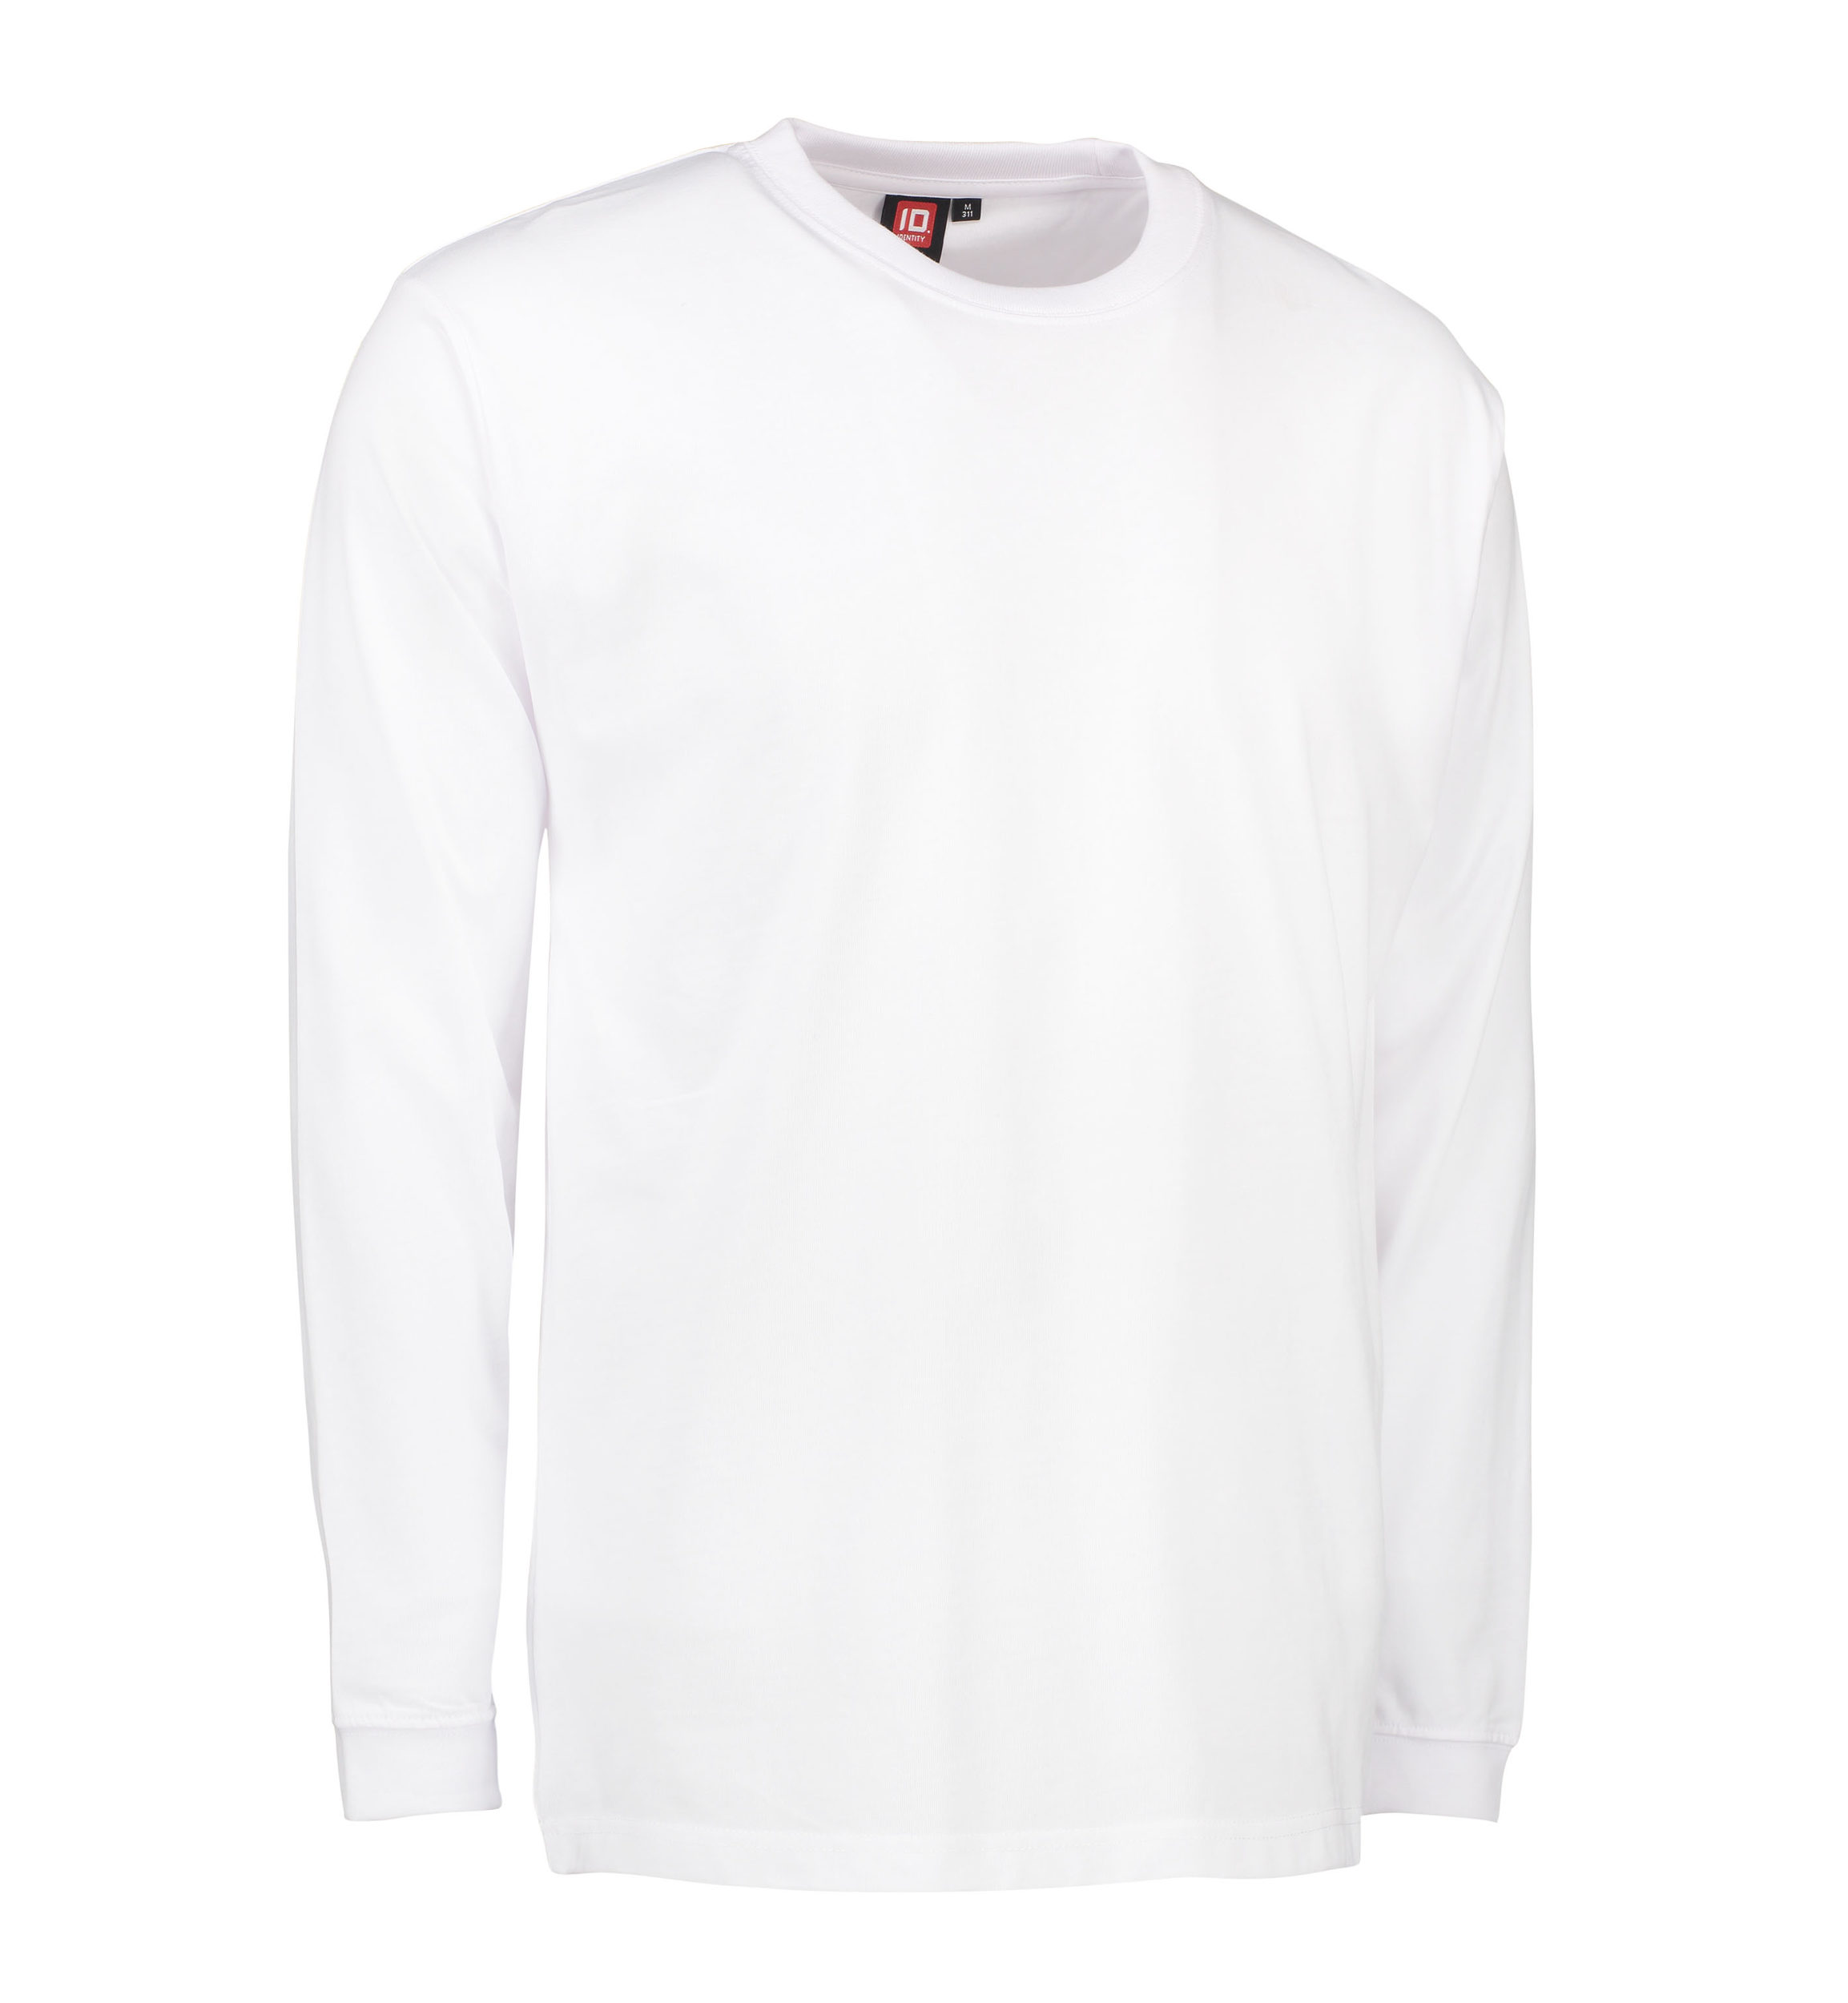 Billede af Slidstærk langærmet t-shirt til mænd i hvid - XS hos Sygeplejebutikken.dk